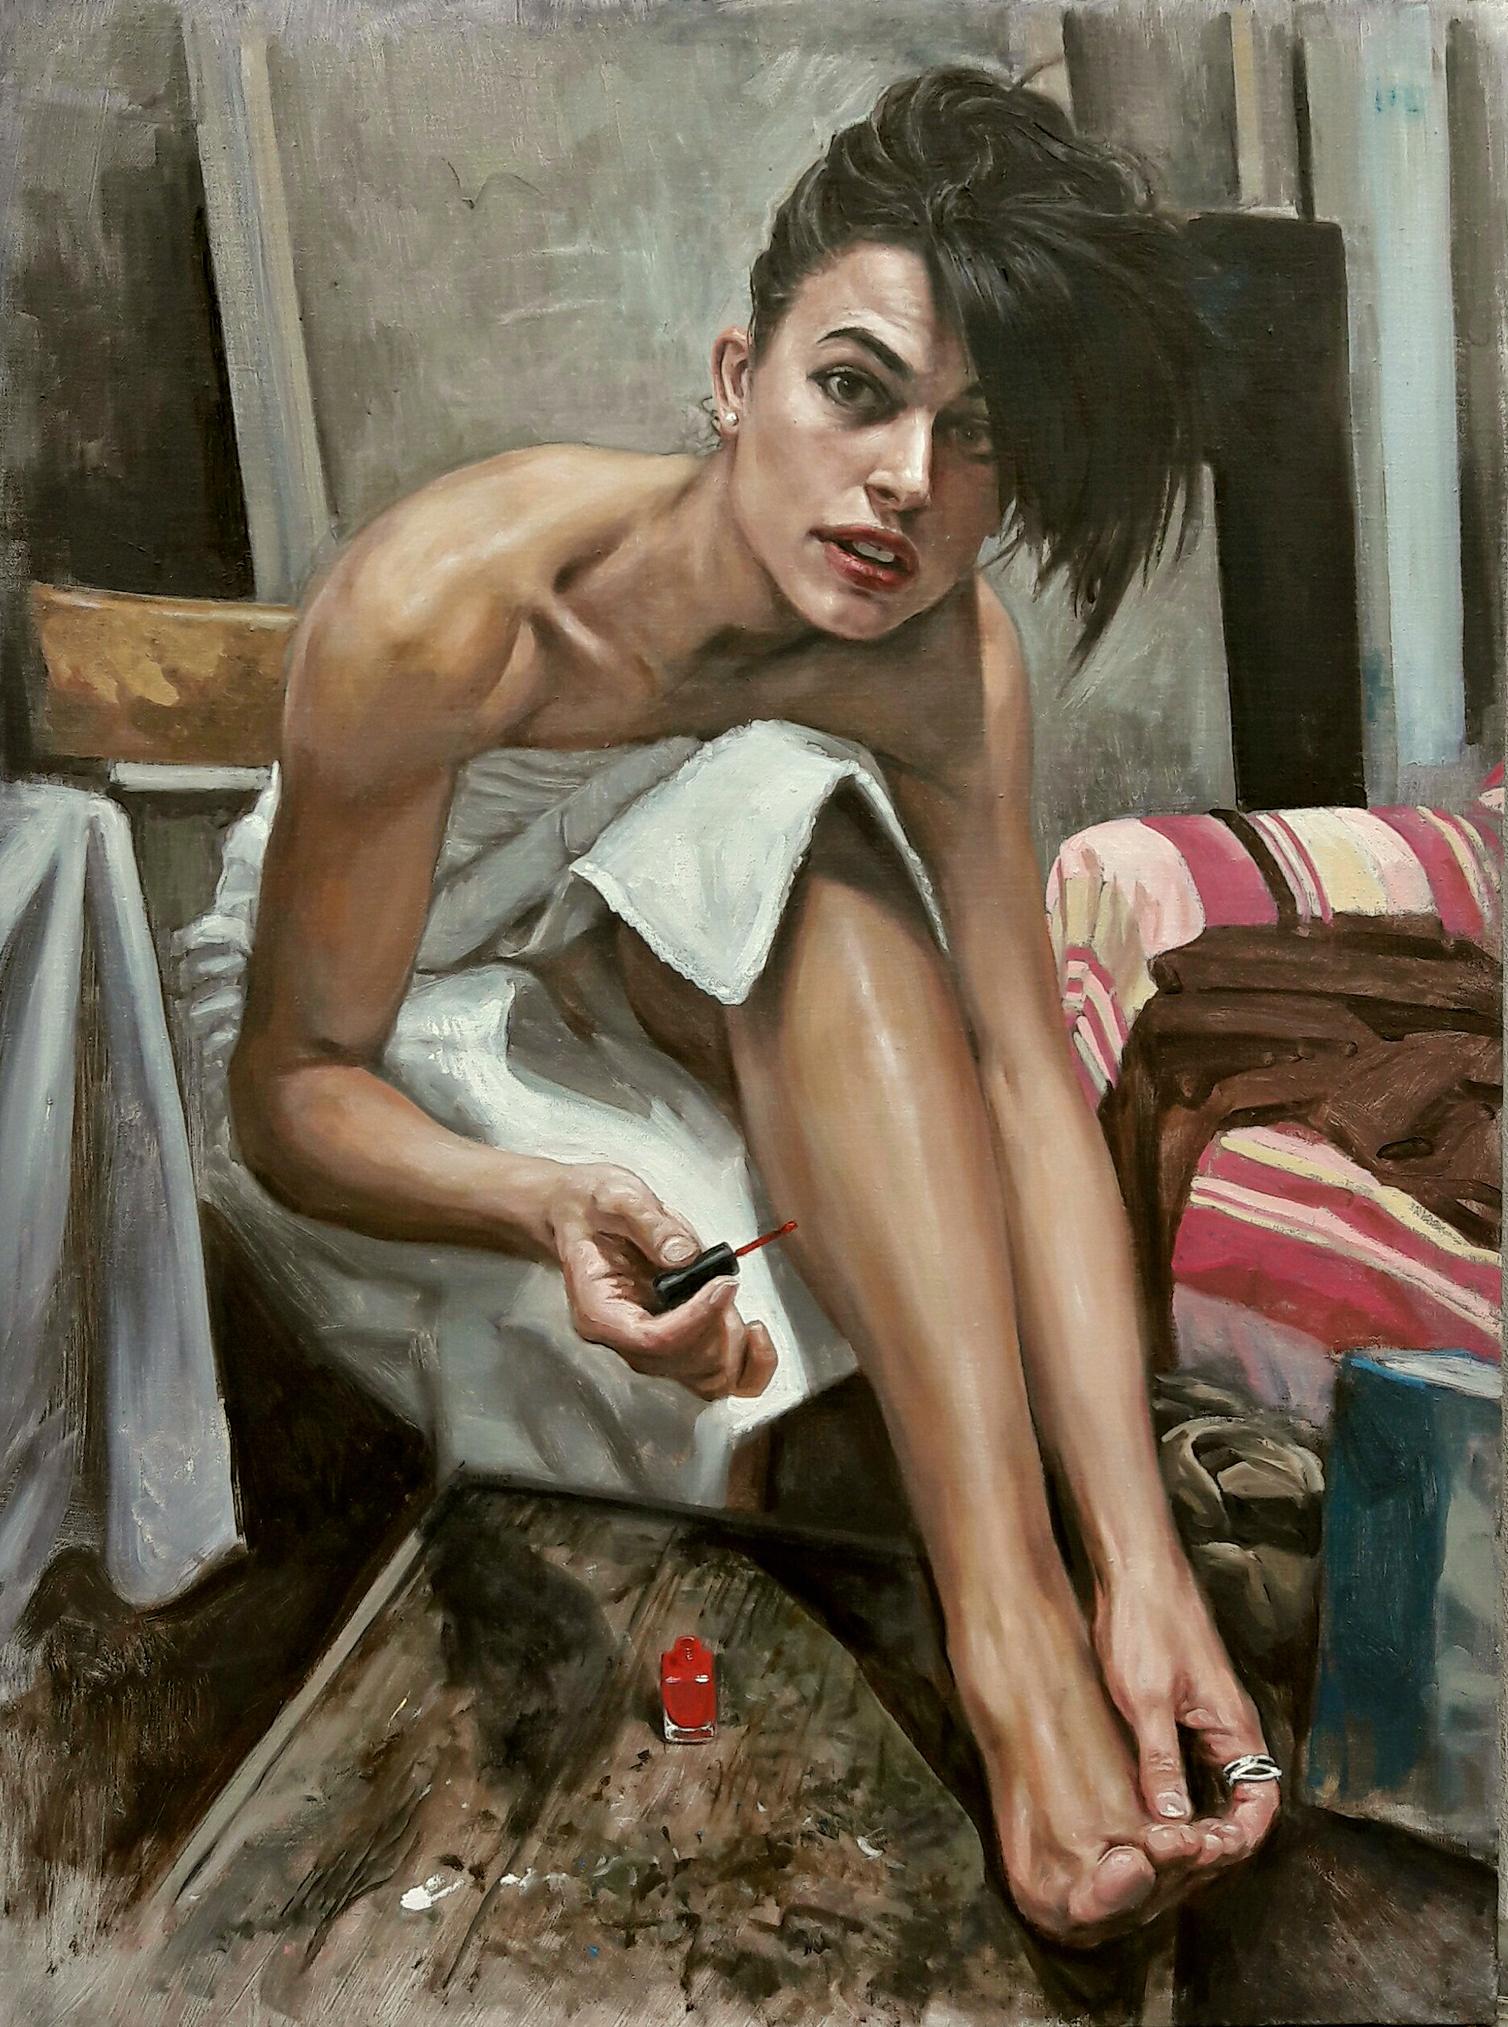 Oil on canvas 

Matteo Nannini est un artiste italien né en 1979 qui vit et travaille à Cento, Ferrara, en Italie. Il a fait ses études à l’Académie des Beaux-Arts de Bologne. Peintre de profession depuis 1997, il enseigne depuis 1998 le dessin et